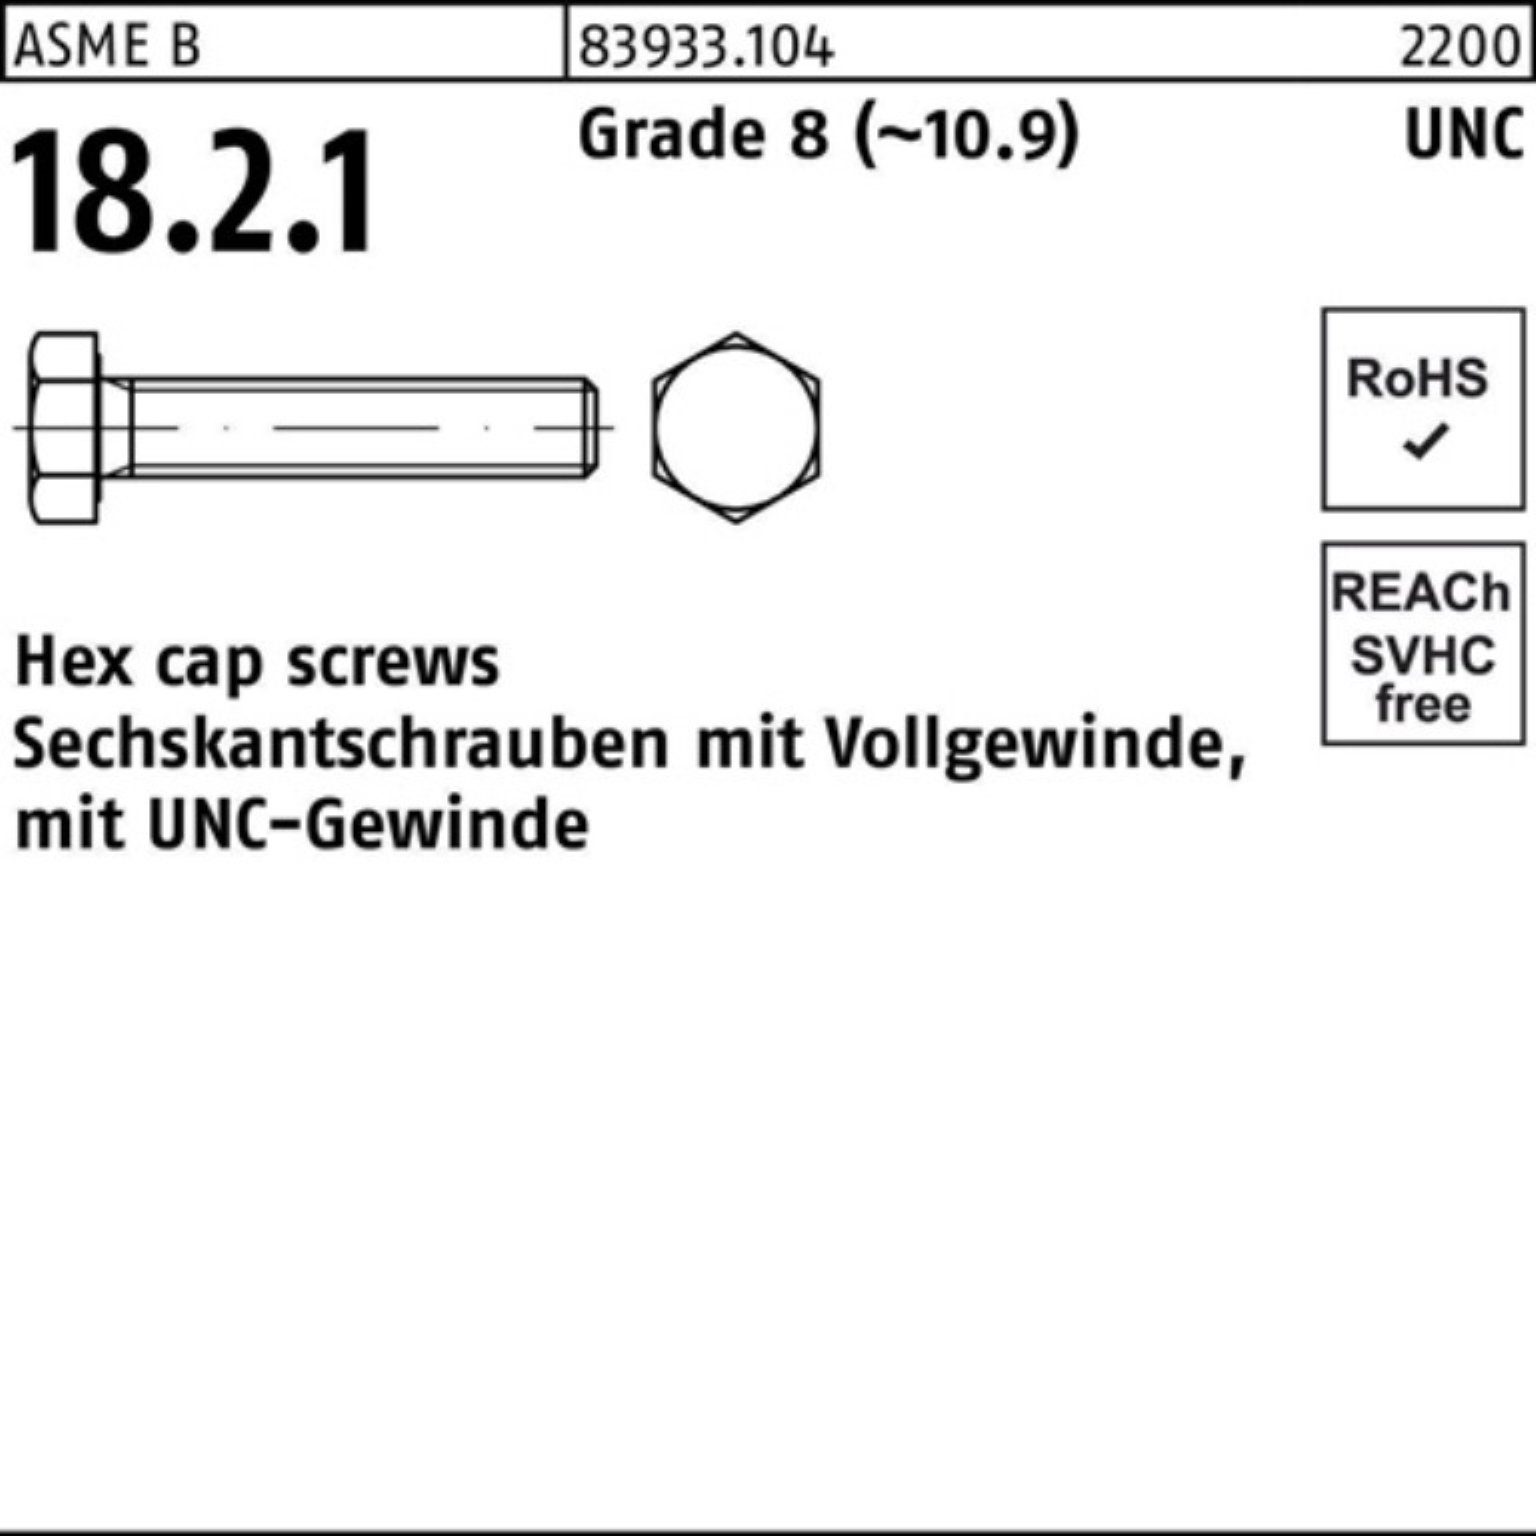 Reyher Sechskantschraube 100er Pack Sechskantschraube R 83933 UNC-Gewinde VG 5/8x 1 1/2 Grade 8